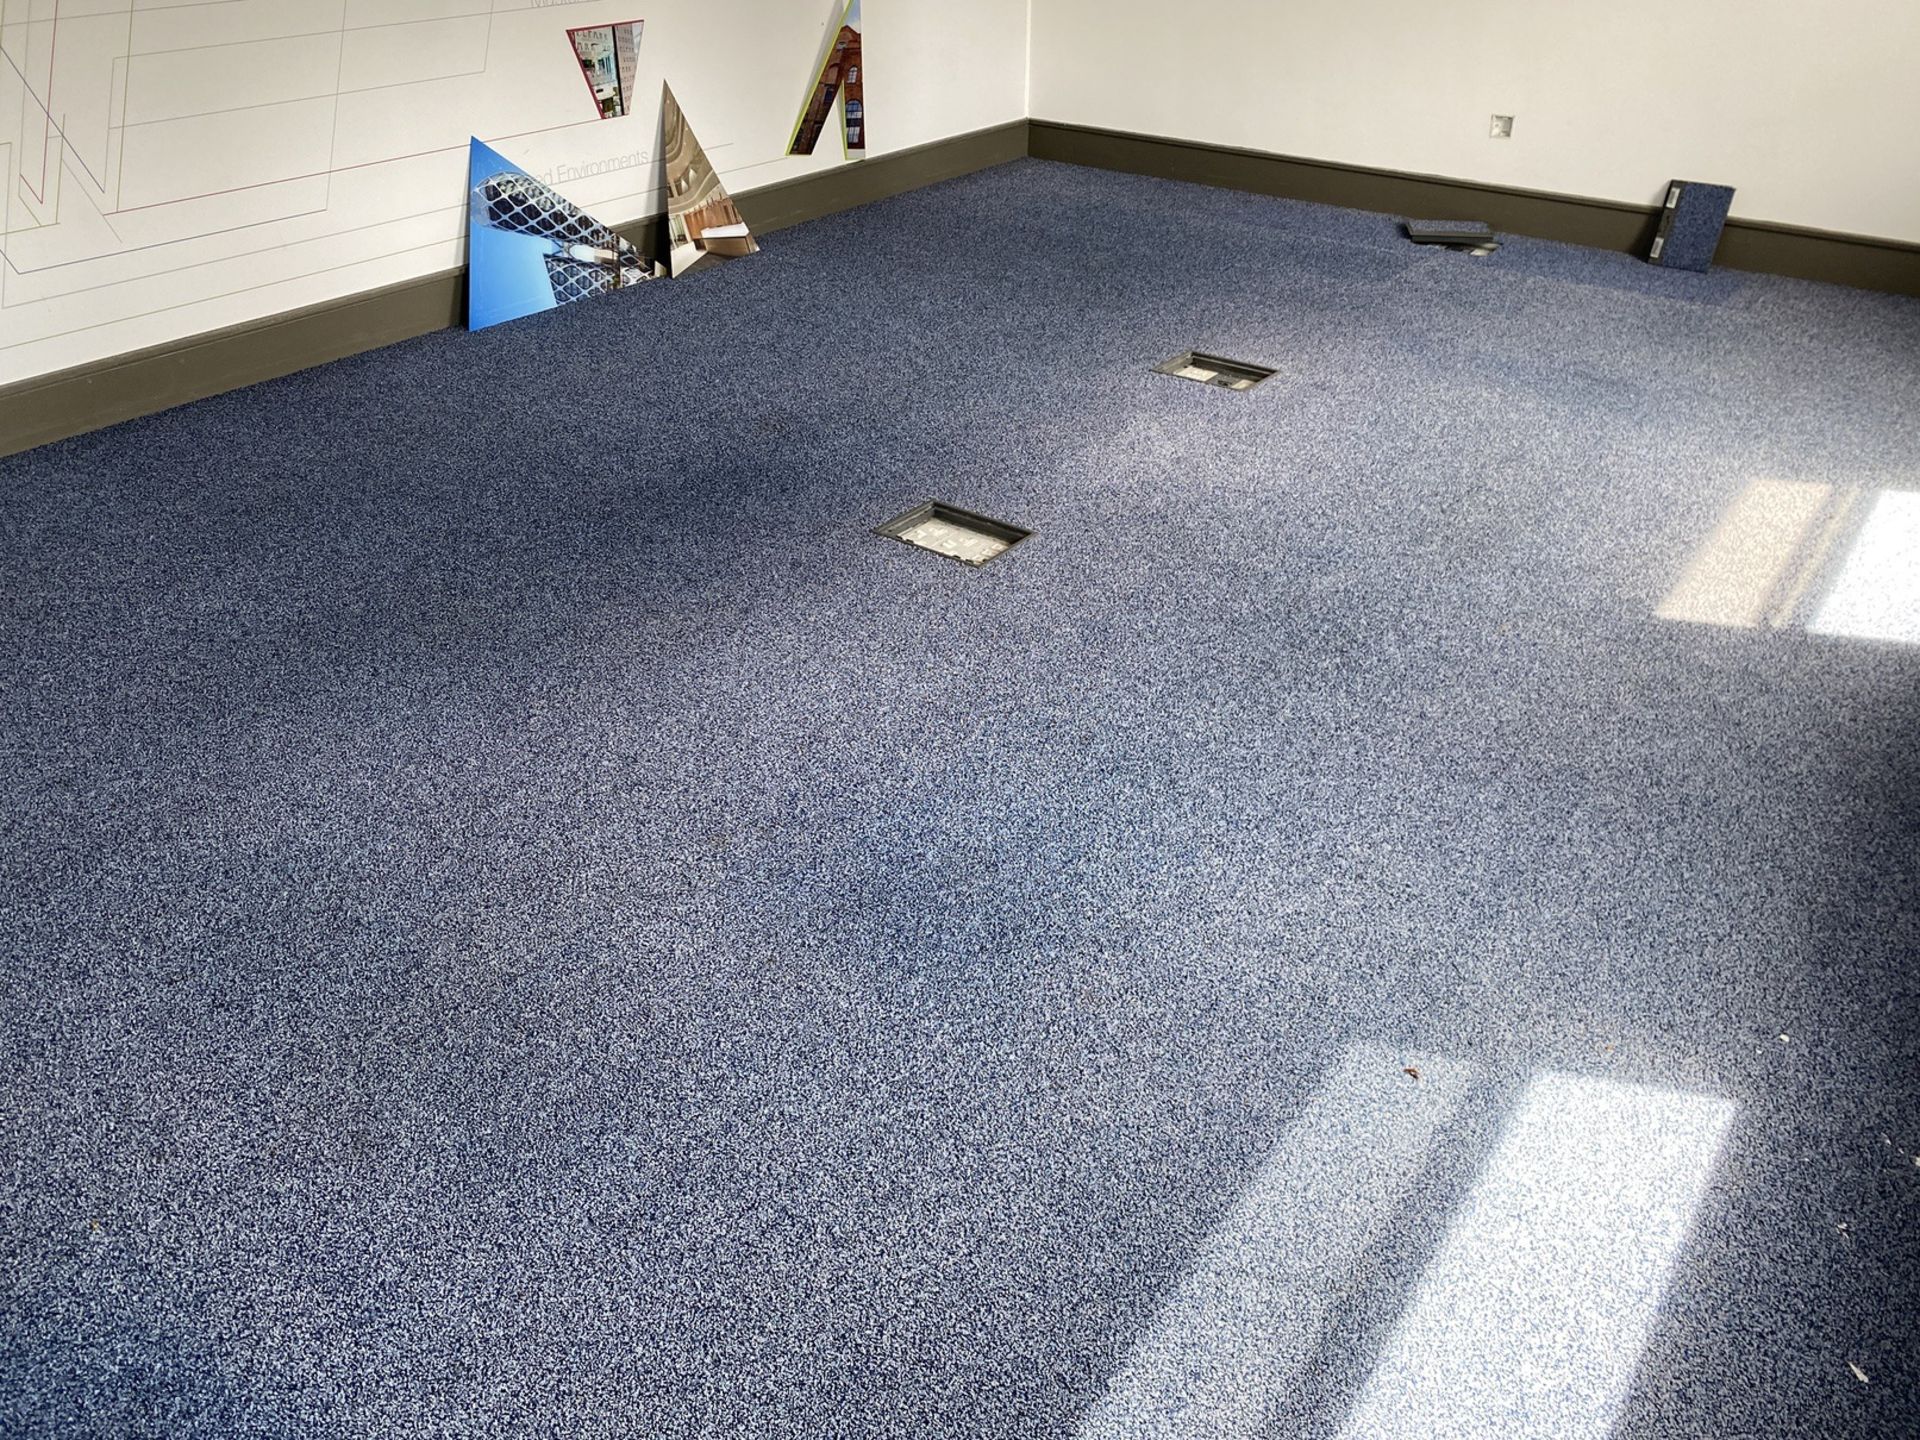 Blue carpet tiles 6.2m x 4.4m - Image 2 of 3